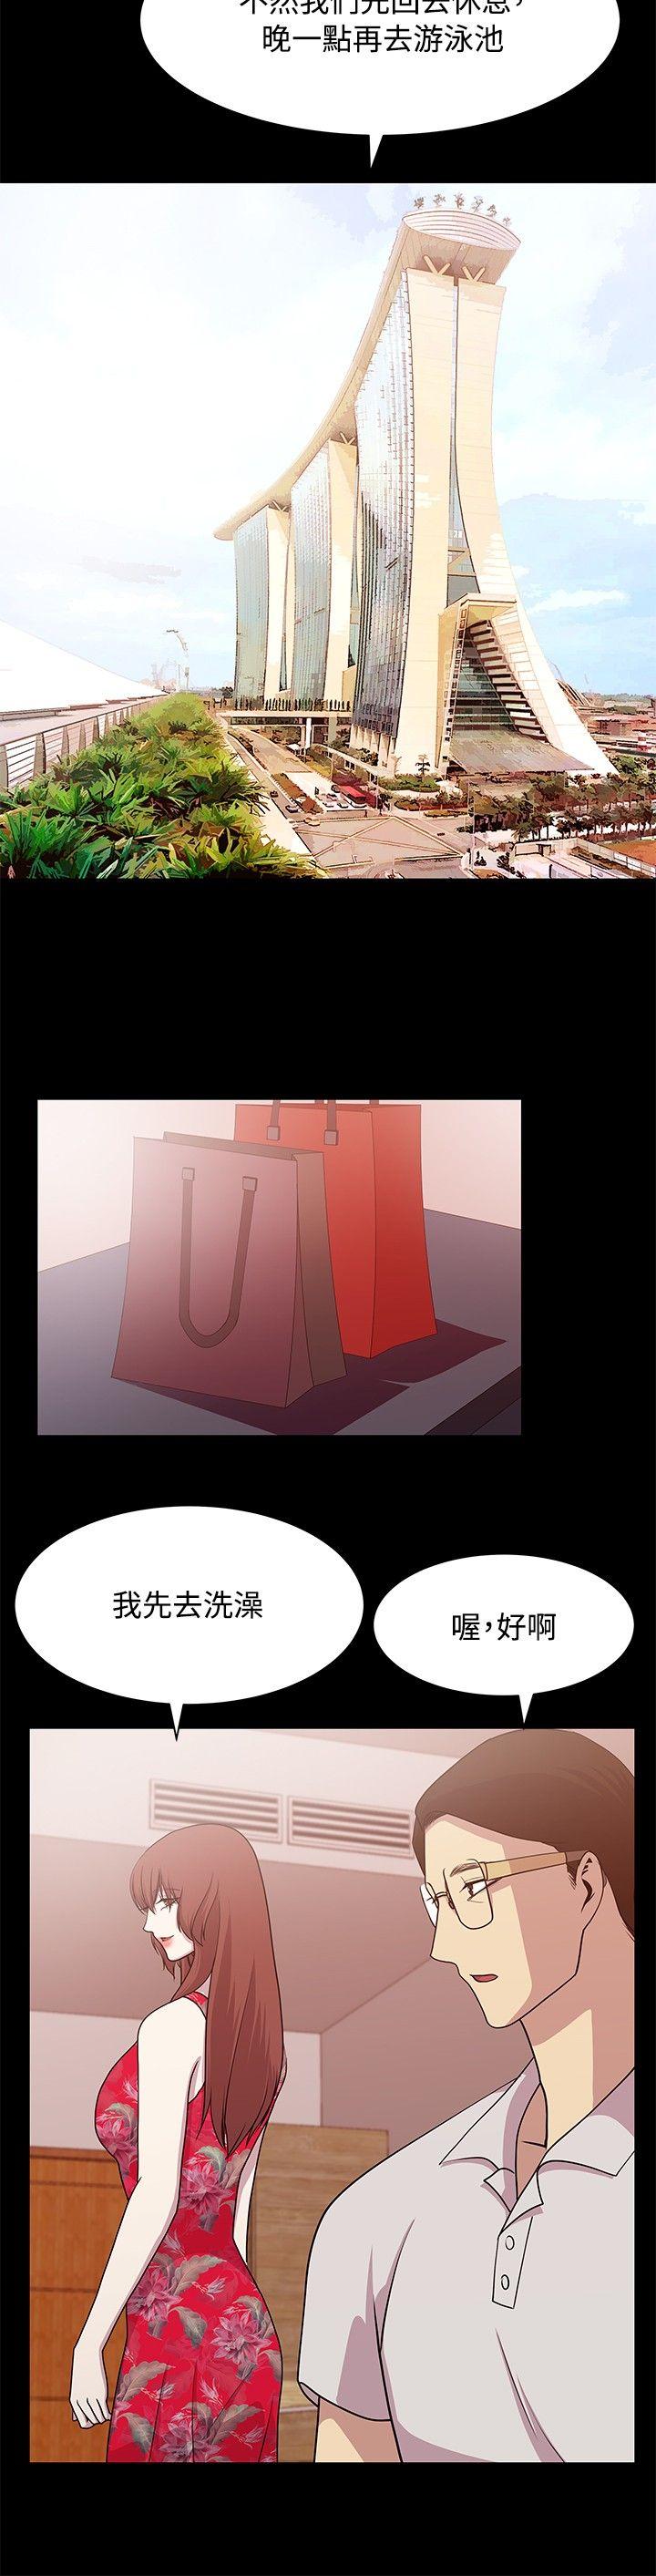 韩国污漫画 贊助者 第13话 8